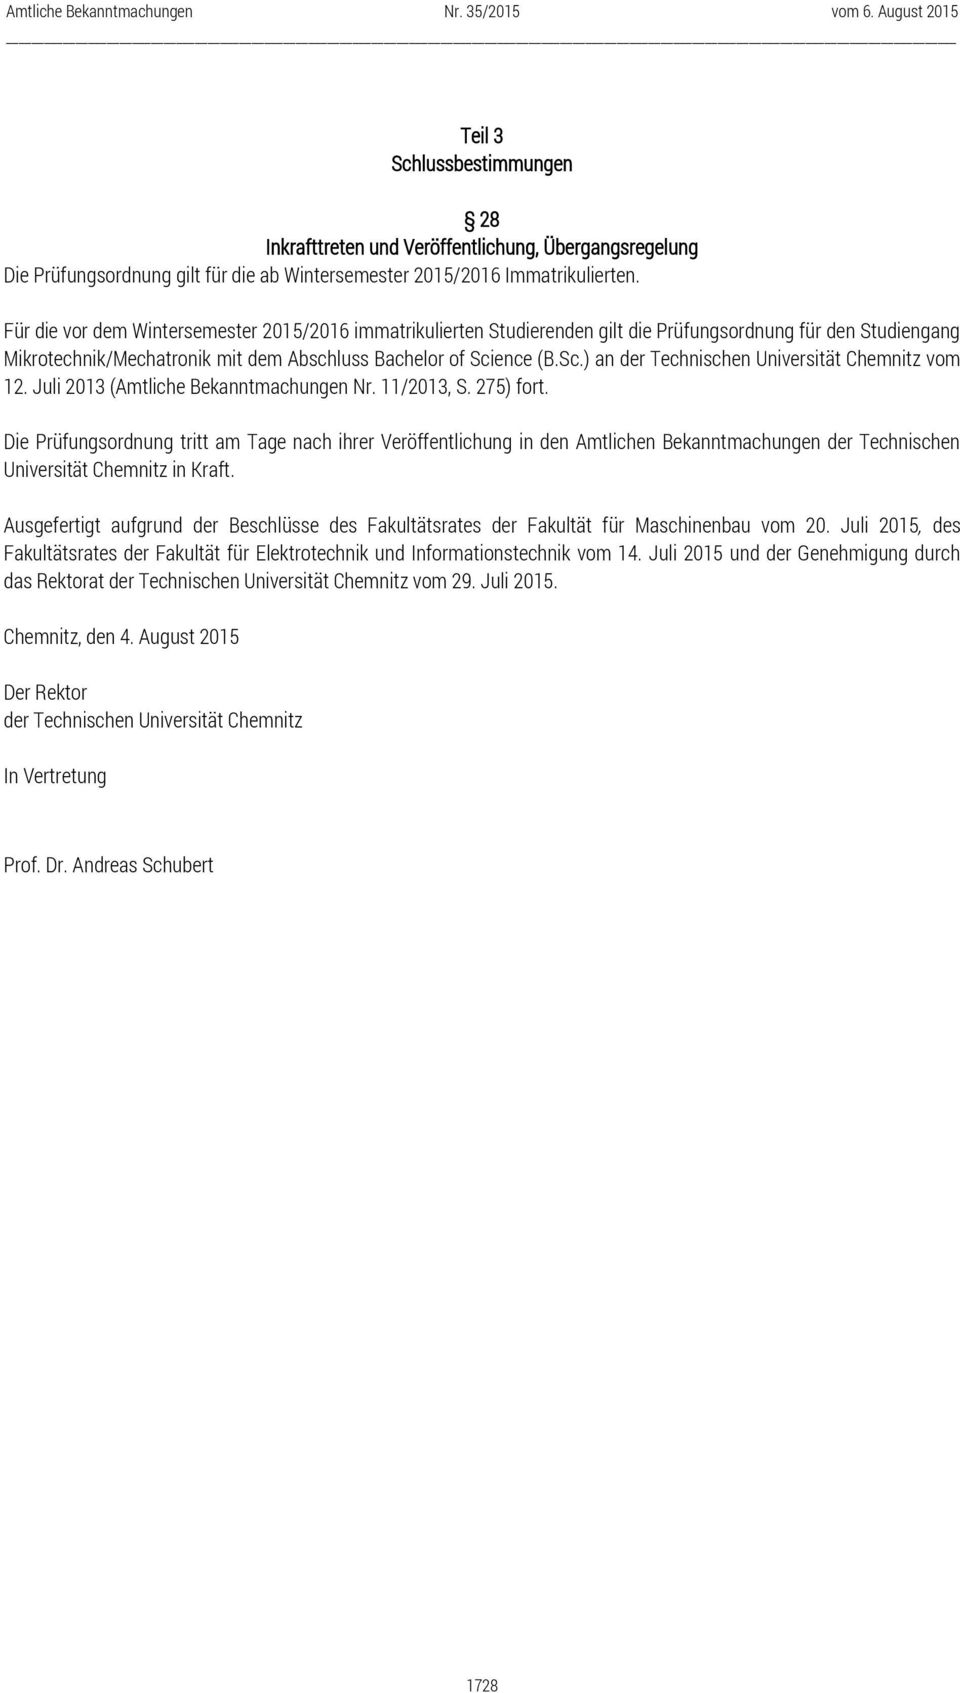 ence (B.Sc.) an der Technischen Universität Chemnitz vom 12. Juli 2013 (Amtliche Bekanntmachungen Nr. 11/2013, S. 275) fort.